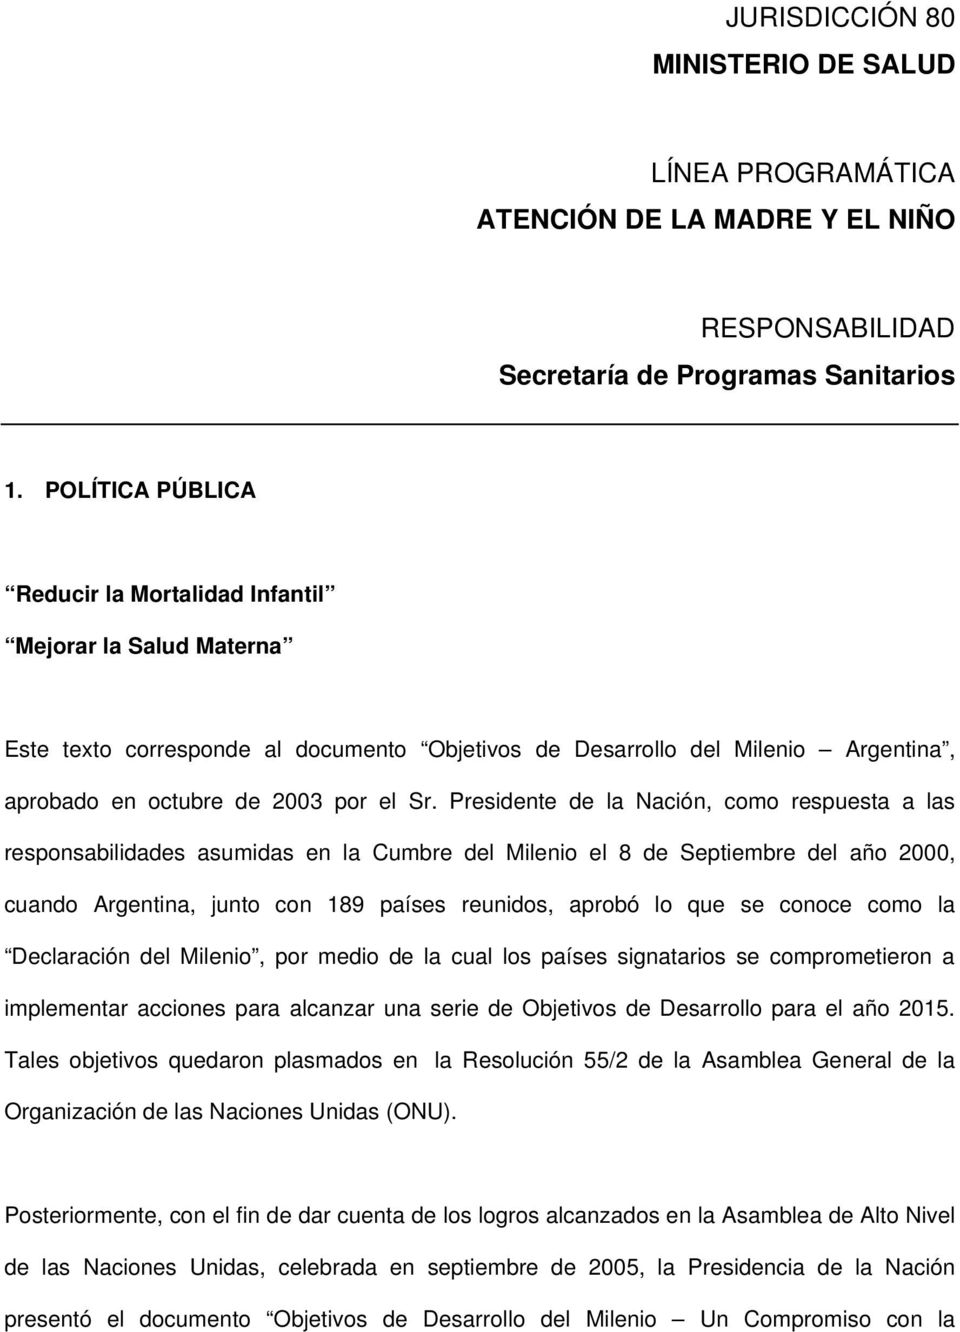 Presidente de la Nación, como respuesta a las responsabilidades asumidas en la Cumbre del Milenio el 8 de Septiembre del año 2000, cuando Argentina, junto con 189 países reunidos, aprobó lo que se